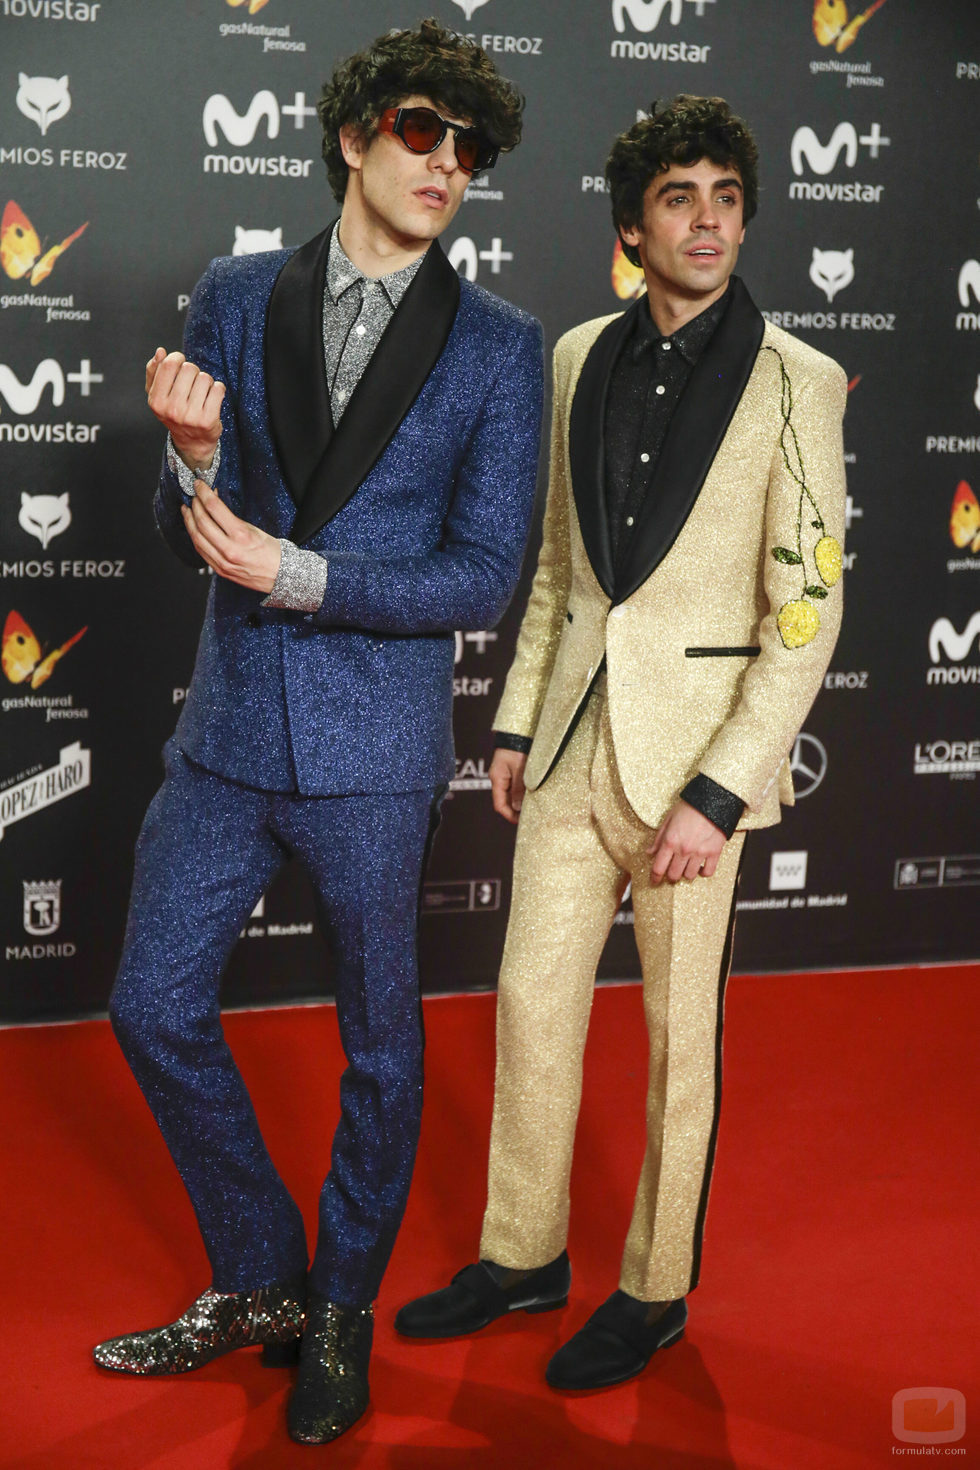 Javier Calvo y Javier Ambrossi posan en la alfombra roja de los Premios Feroz 2018